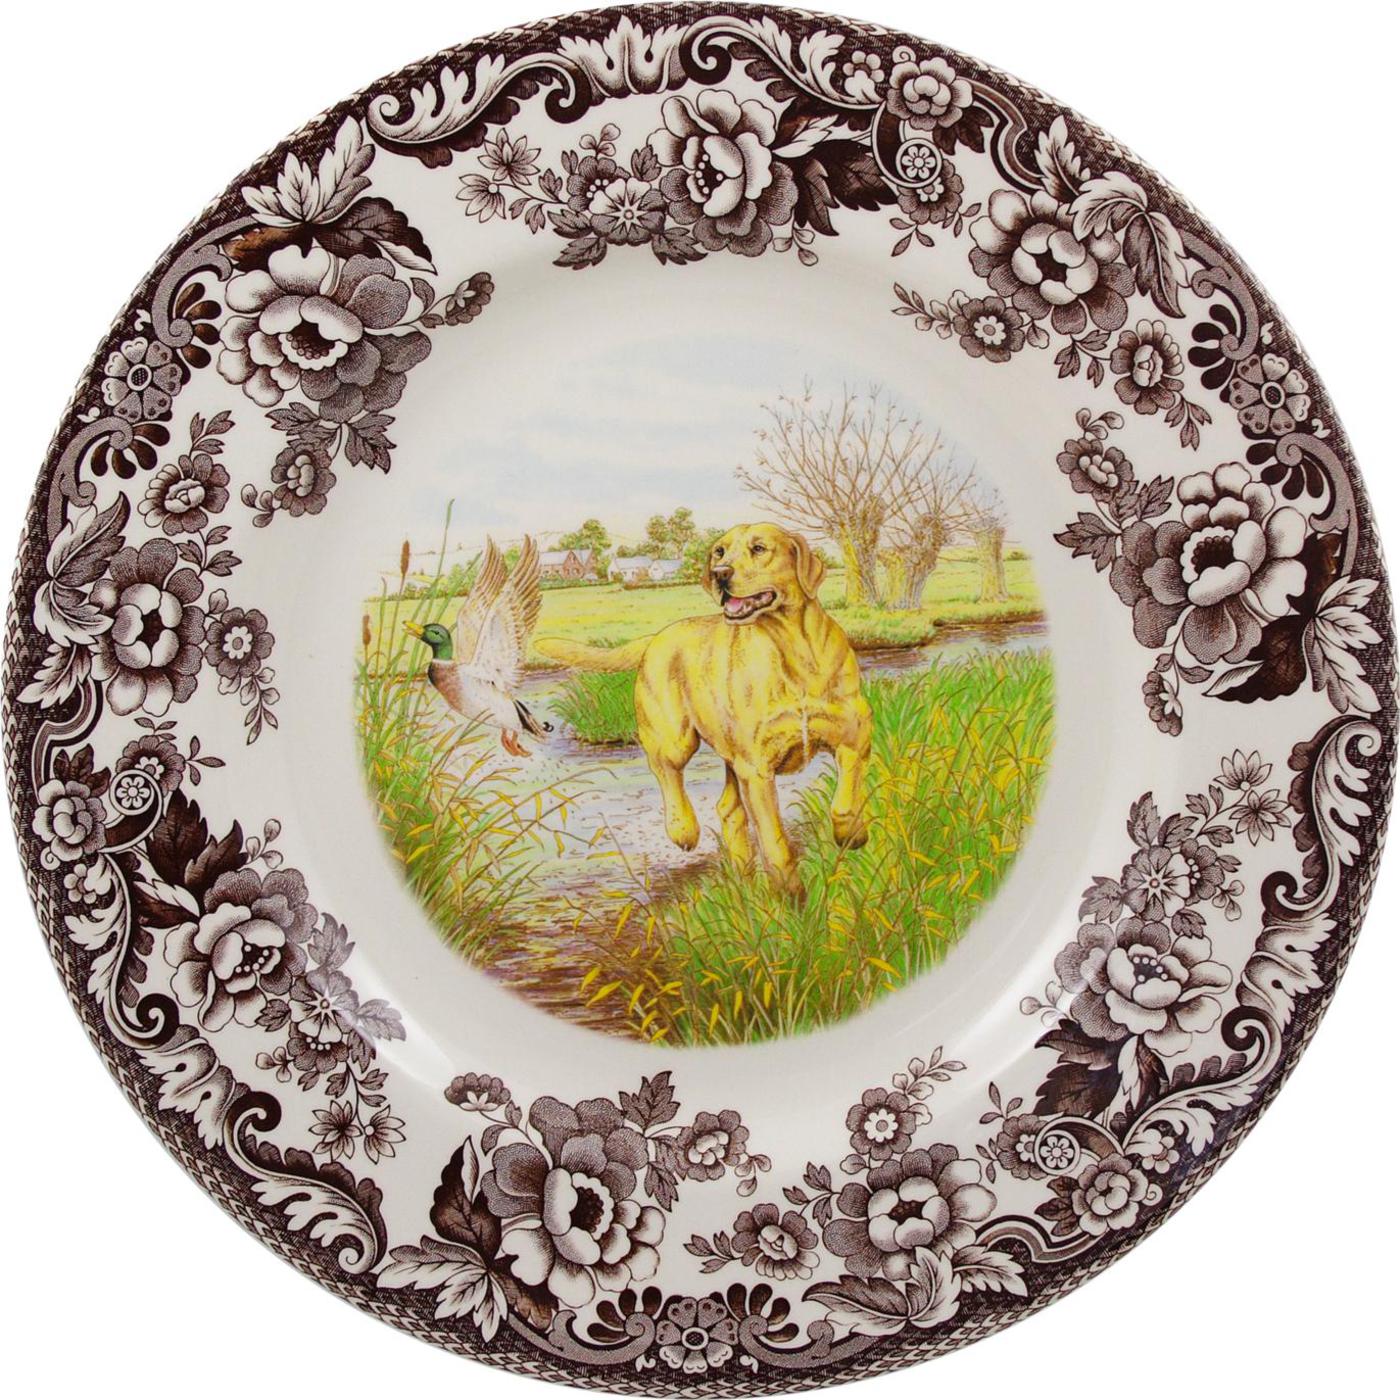 Spode Woodland Dinner Plate, Yellow Labrador Retriever